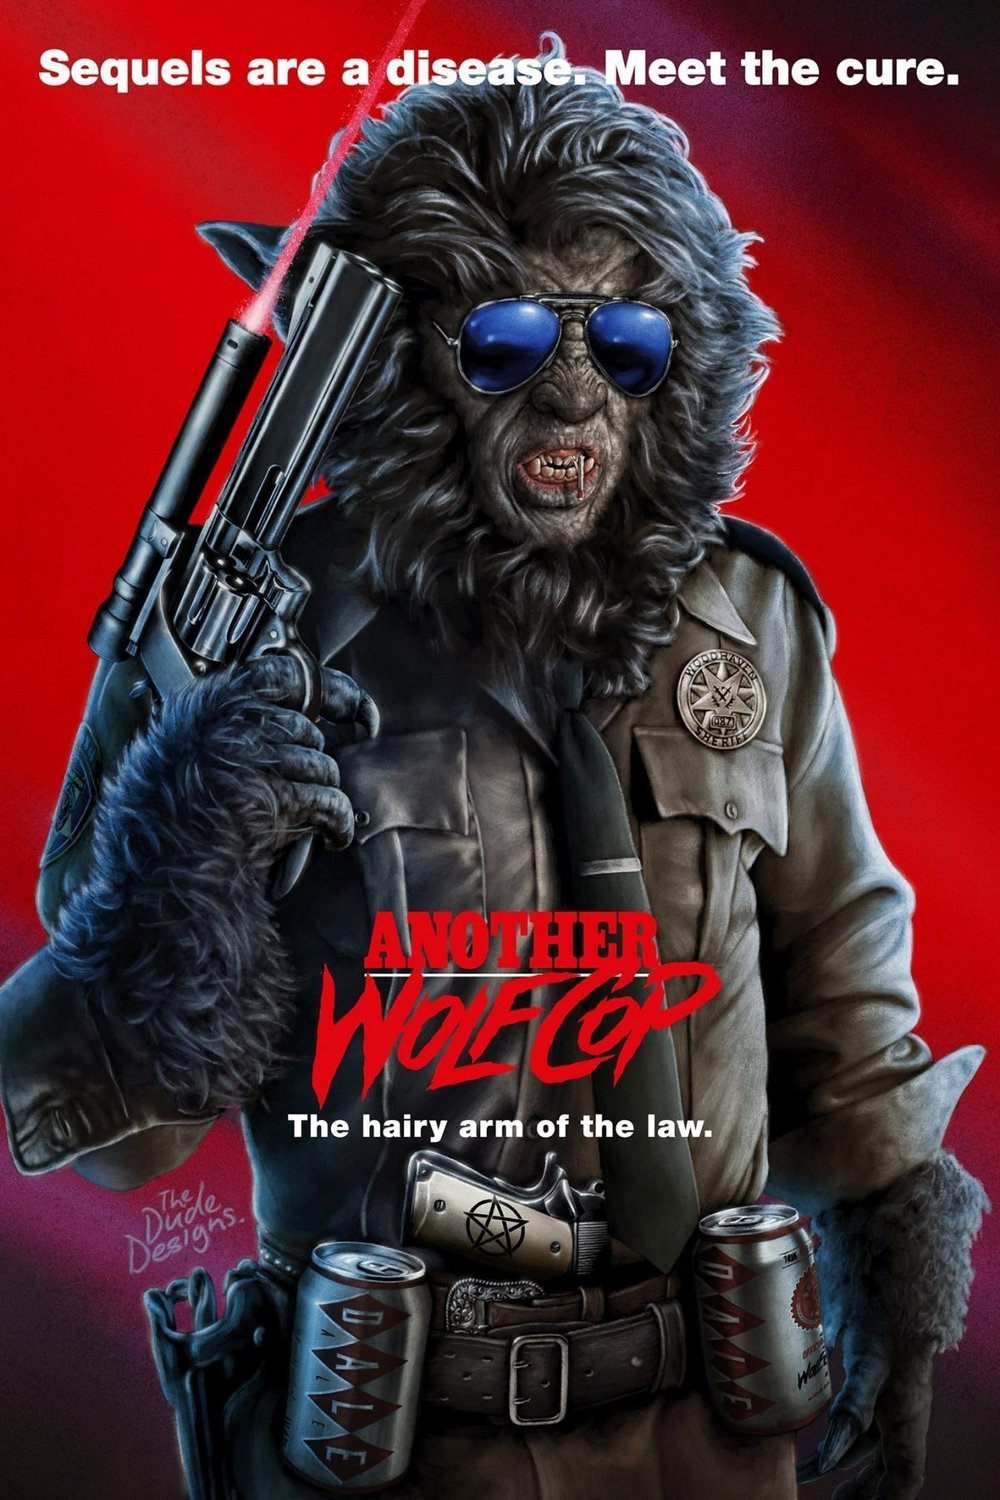 L'affiche du film Another WolfCop